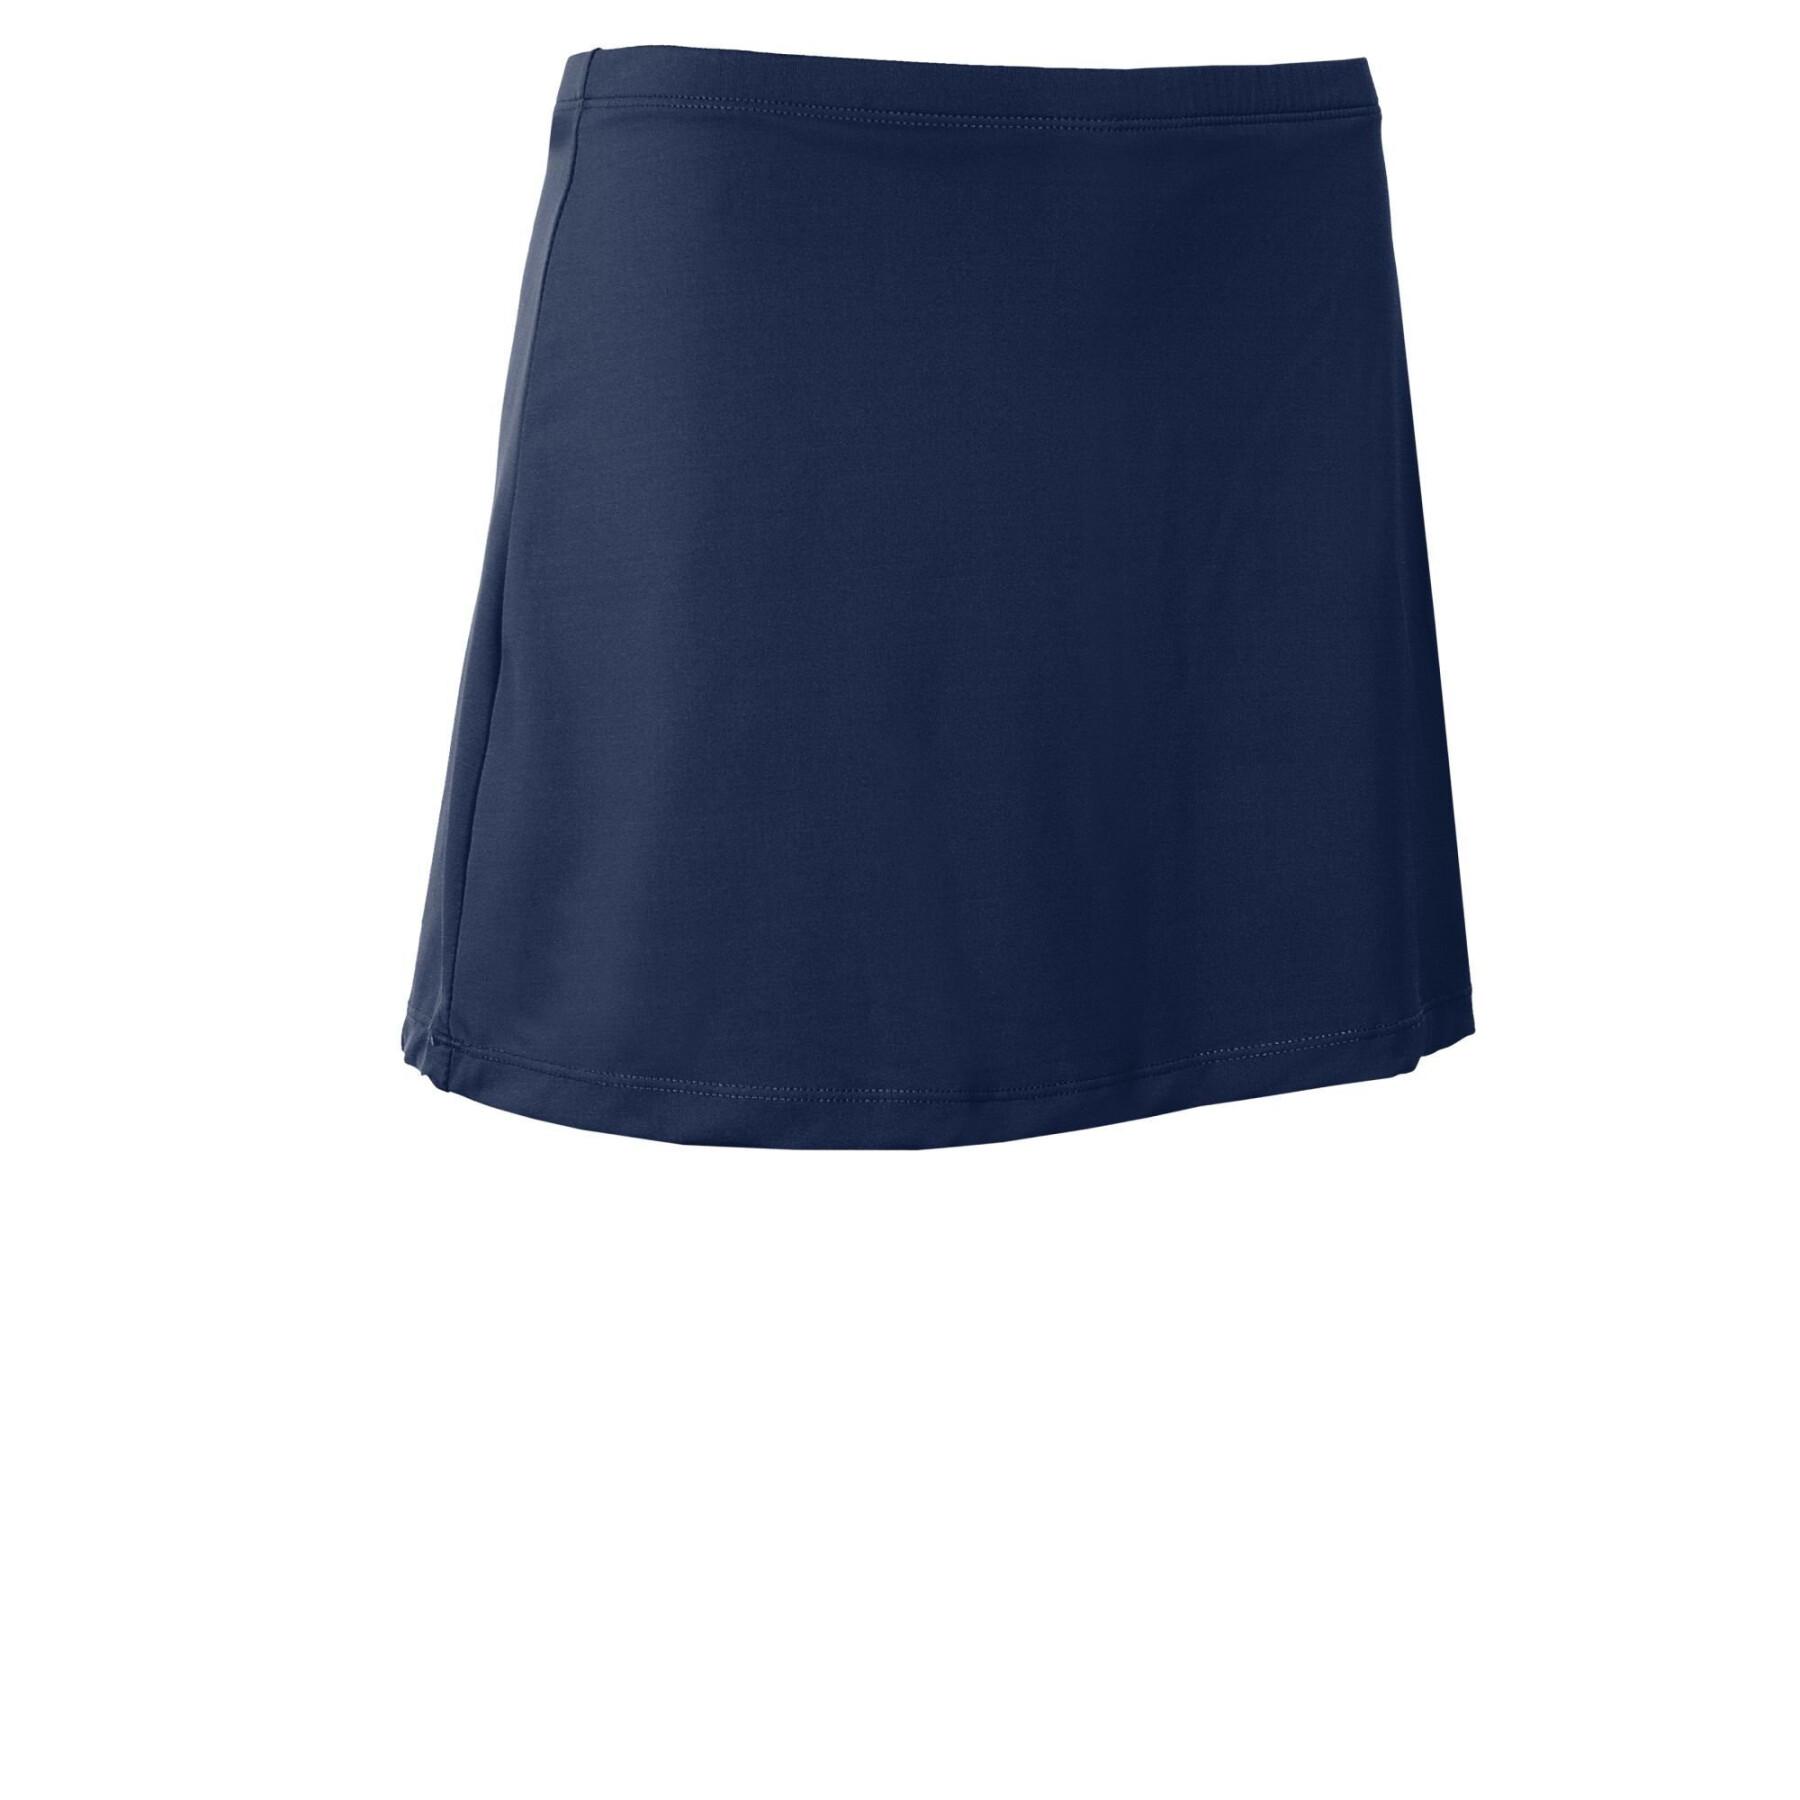 Women's skirt-short Reece Australia Fundamental